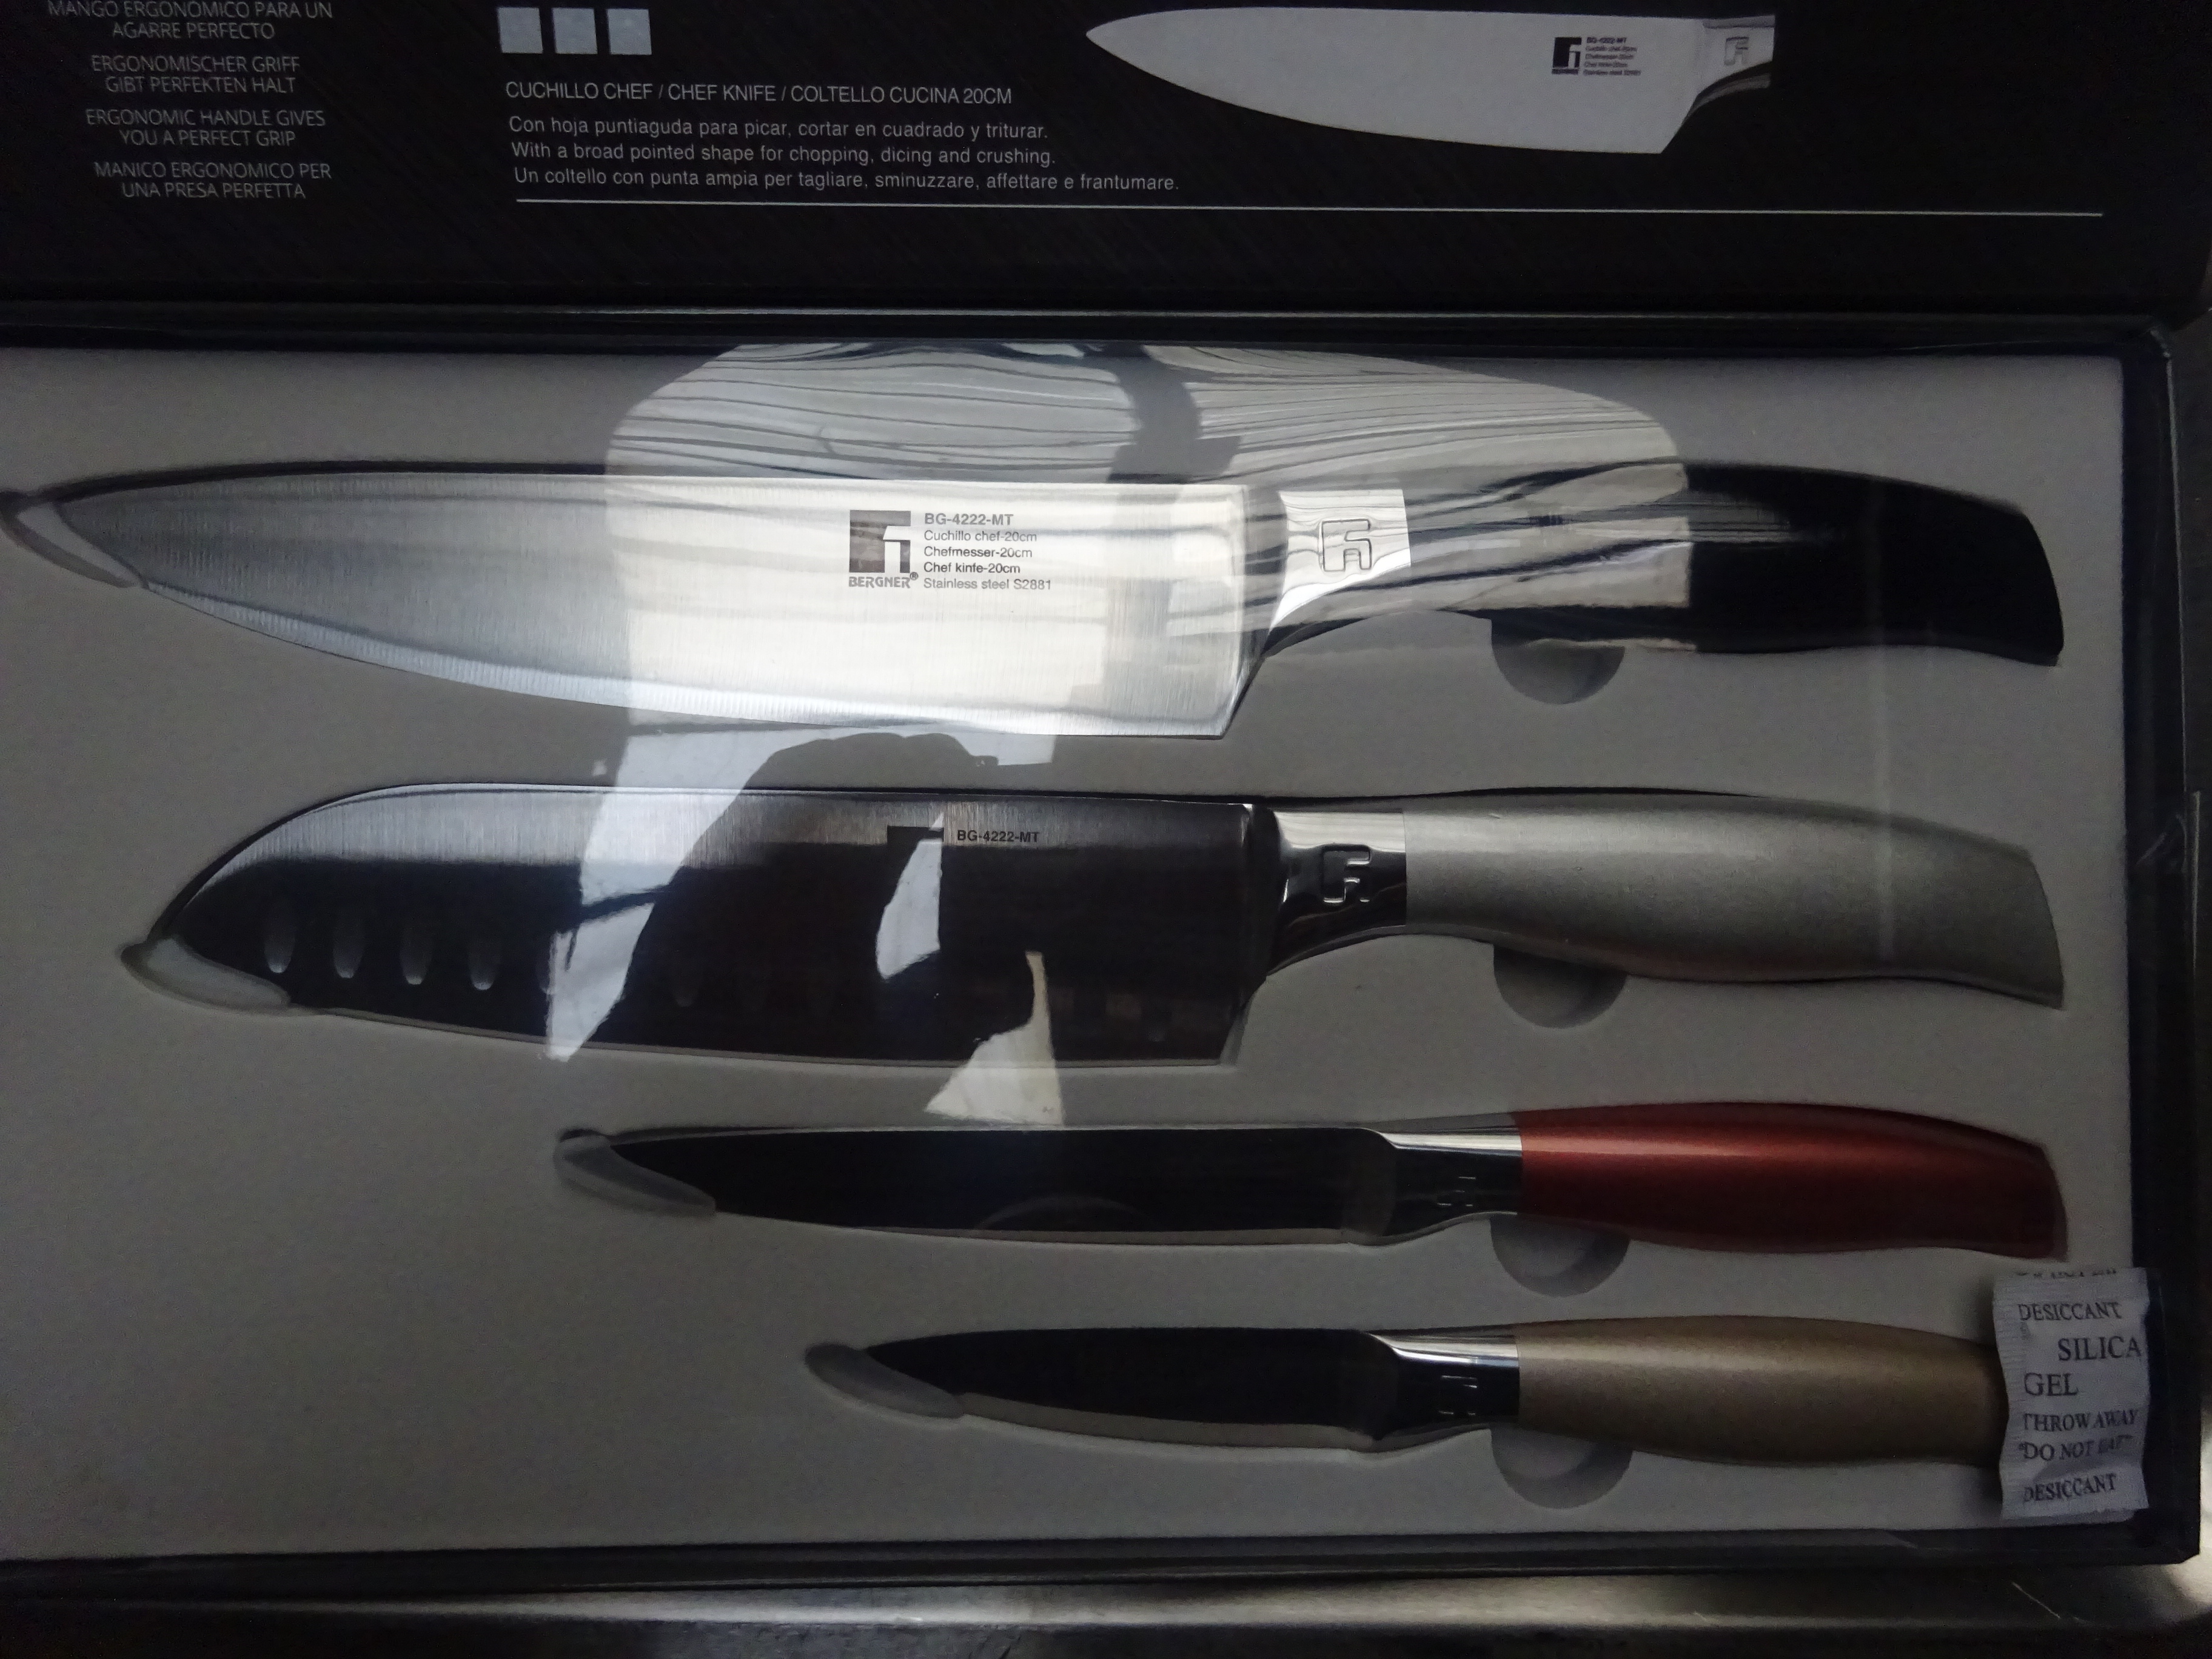 Bergner knife set